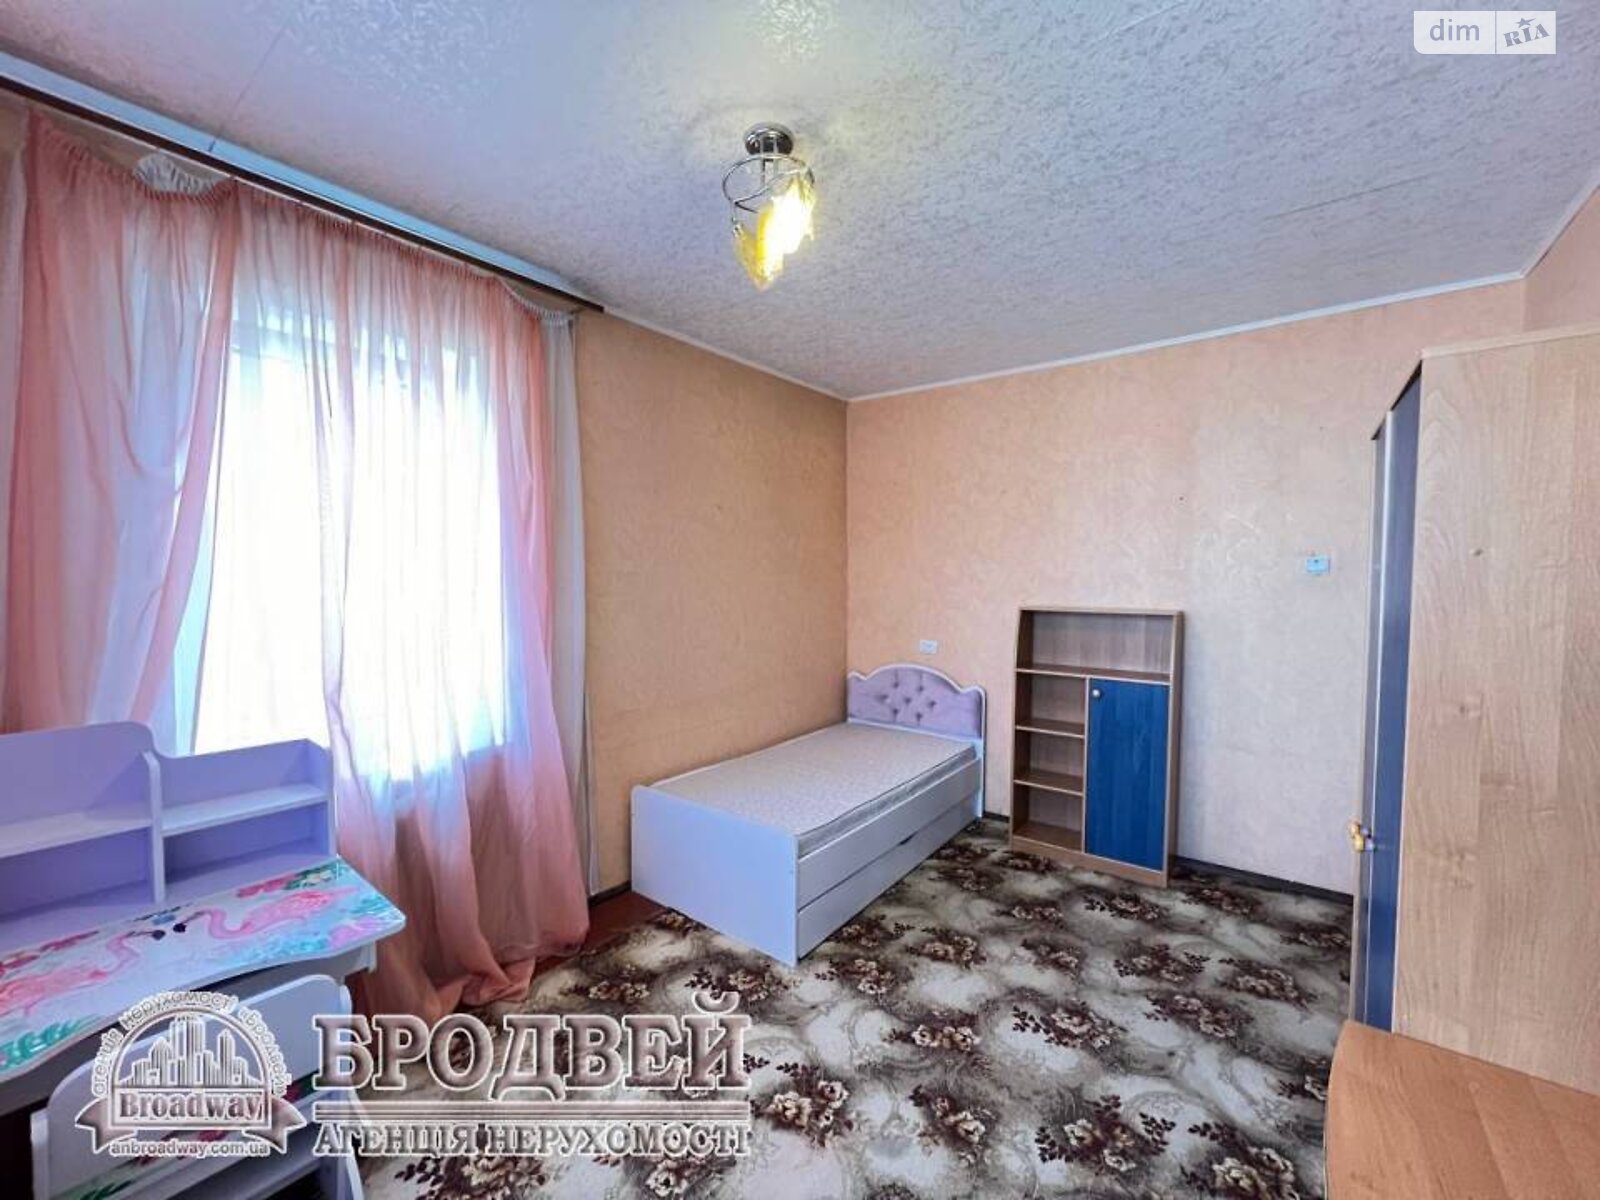 Продажа трехкомнатной квартиры в Чернигове, на ул. Независимости 16, район Масаны фото 1